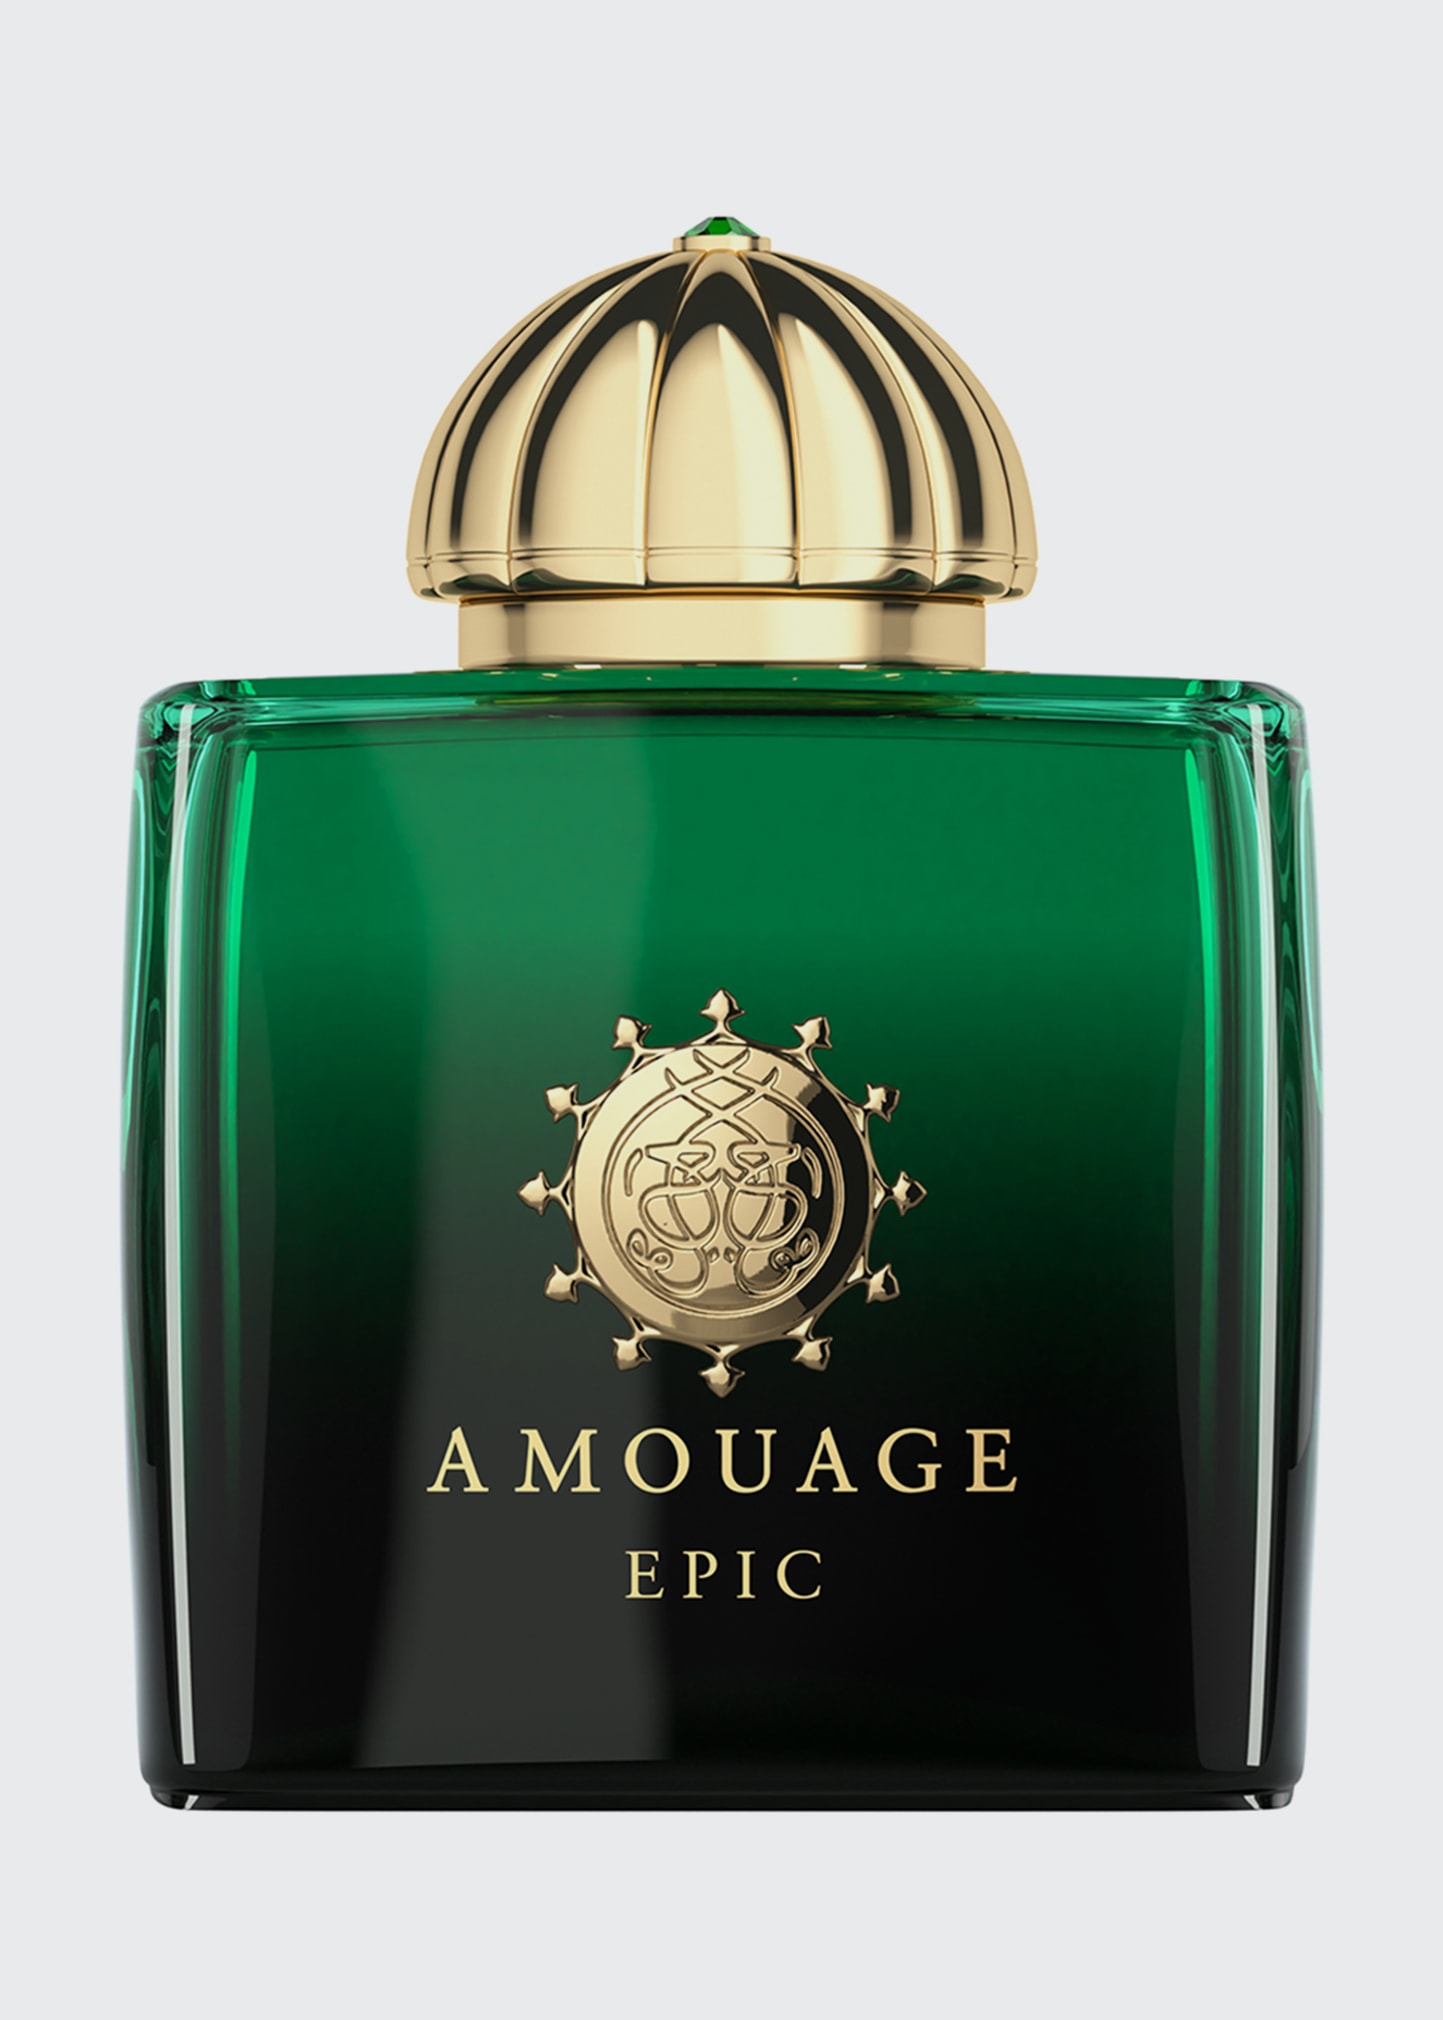 Epic for Ladies Eau de Parfum, 3.4 oz.